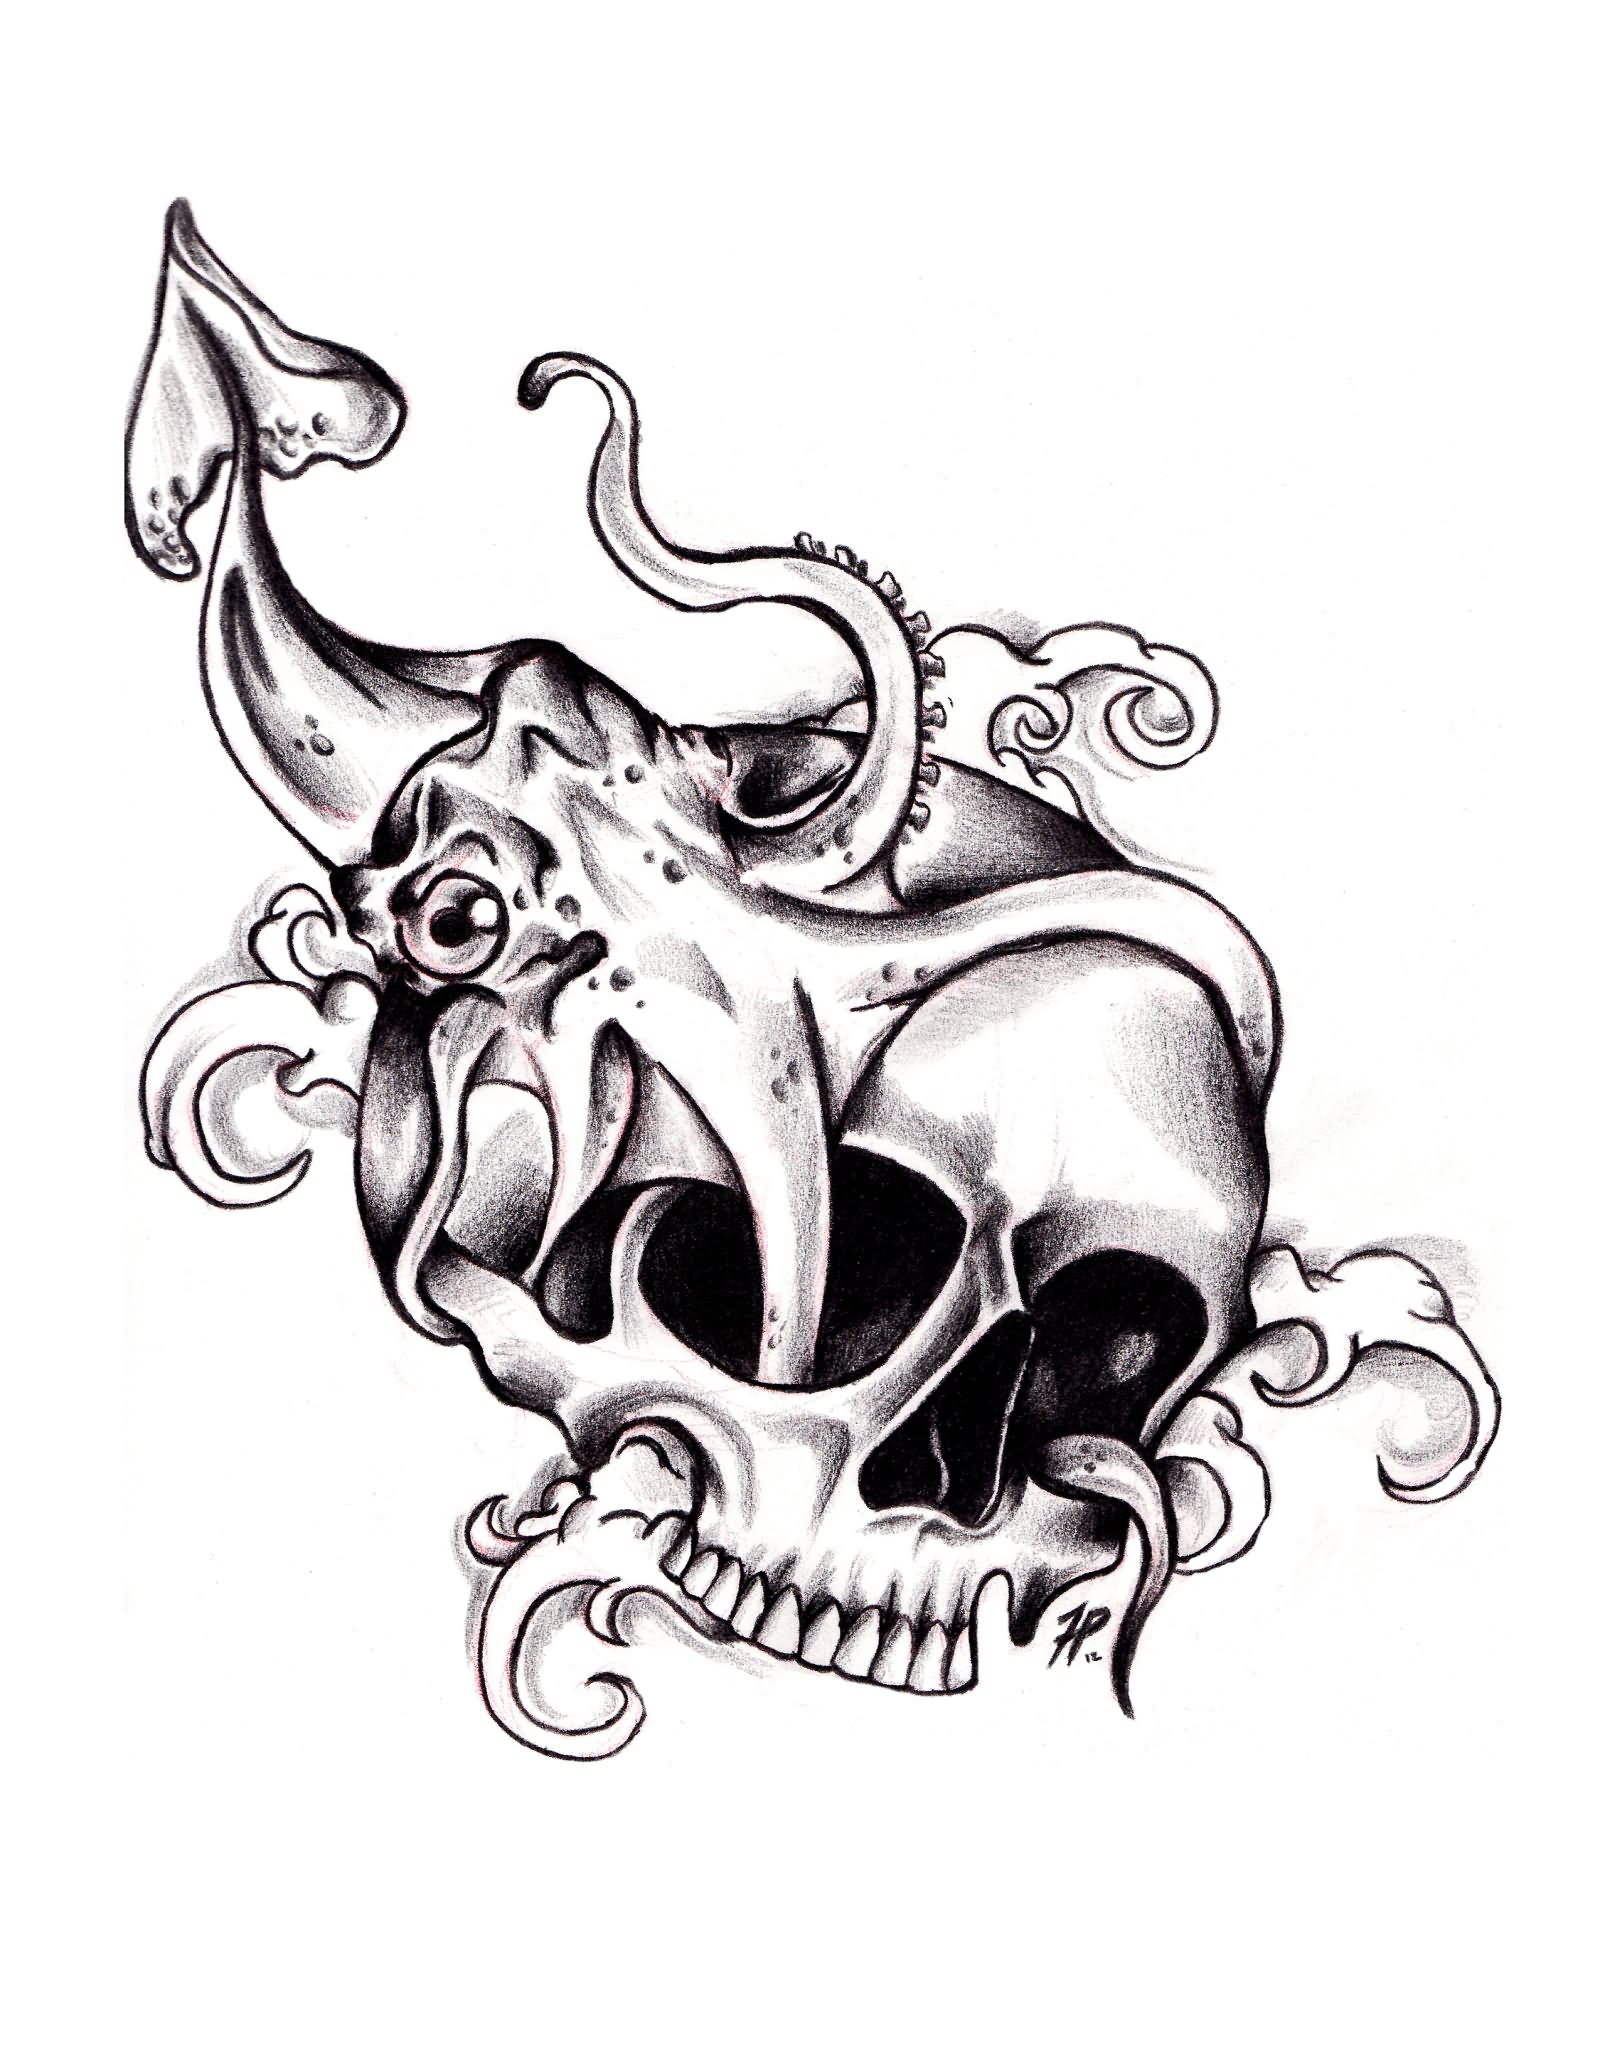 Skull And Squid Tattoo Design Idea